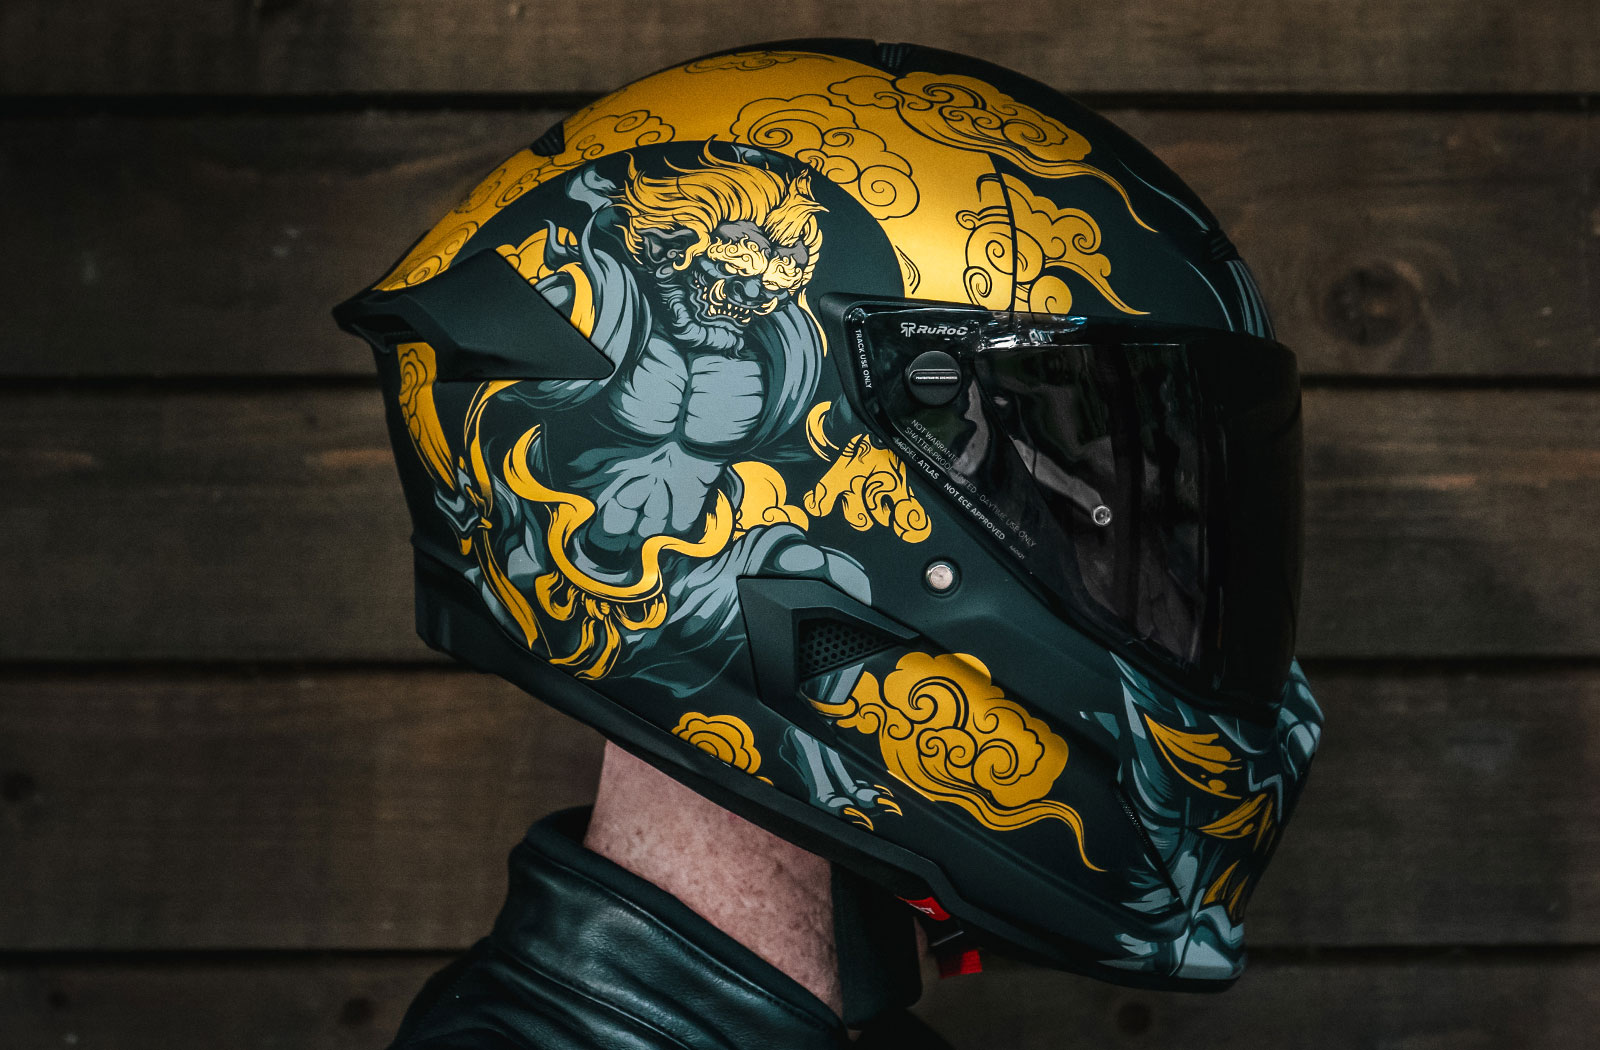 Ruroc 3.0 motorcycle helmet review